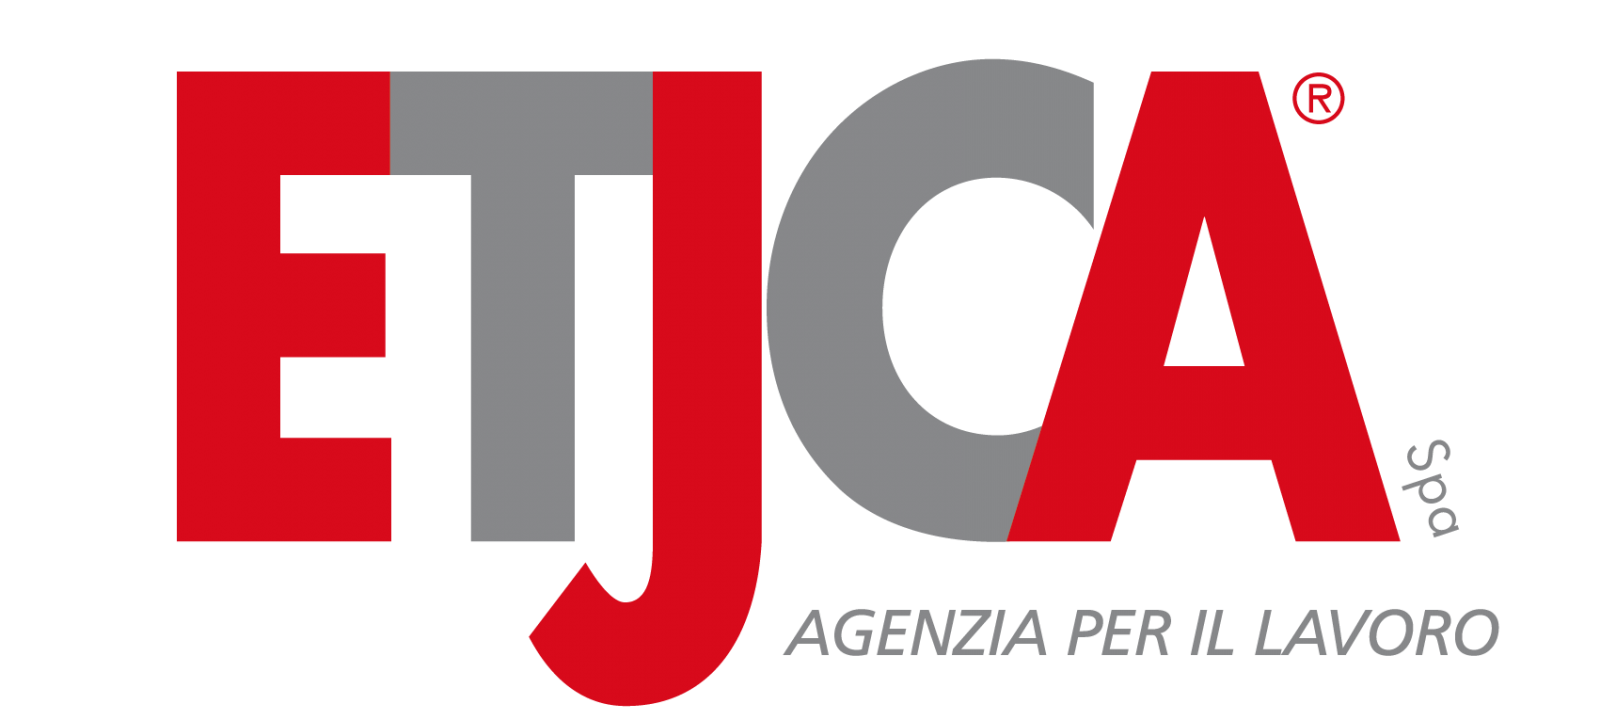 Logo ETJCA SPA